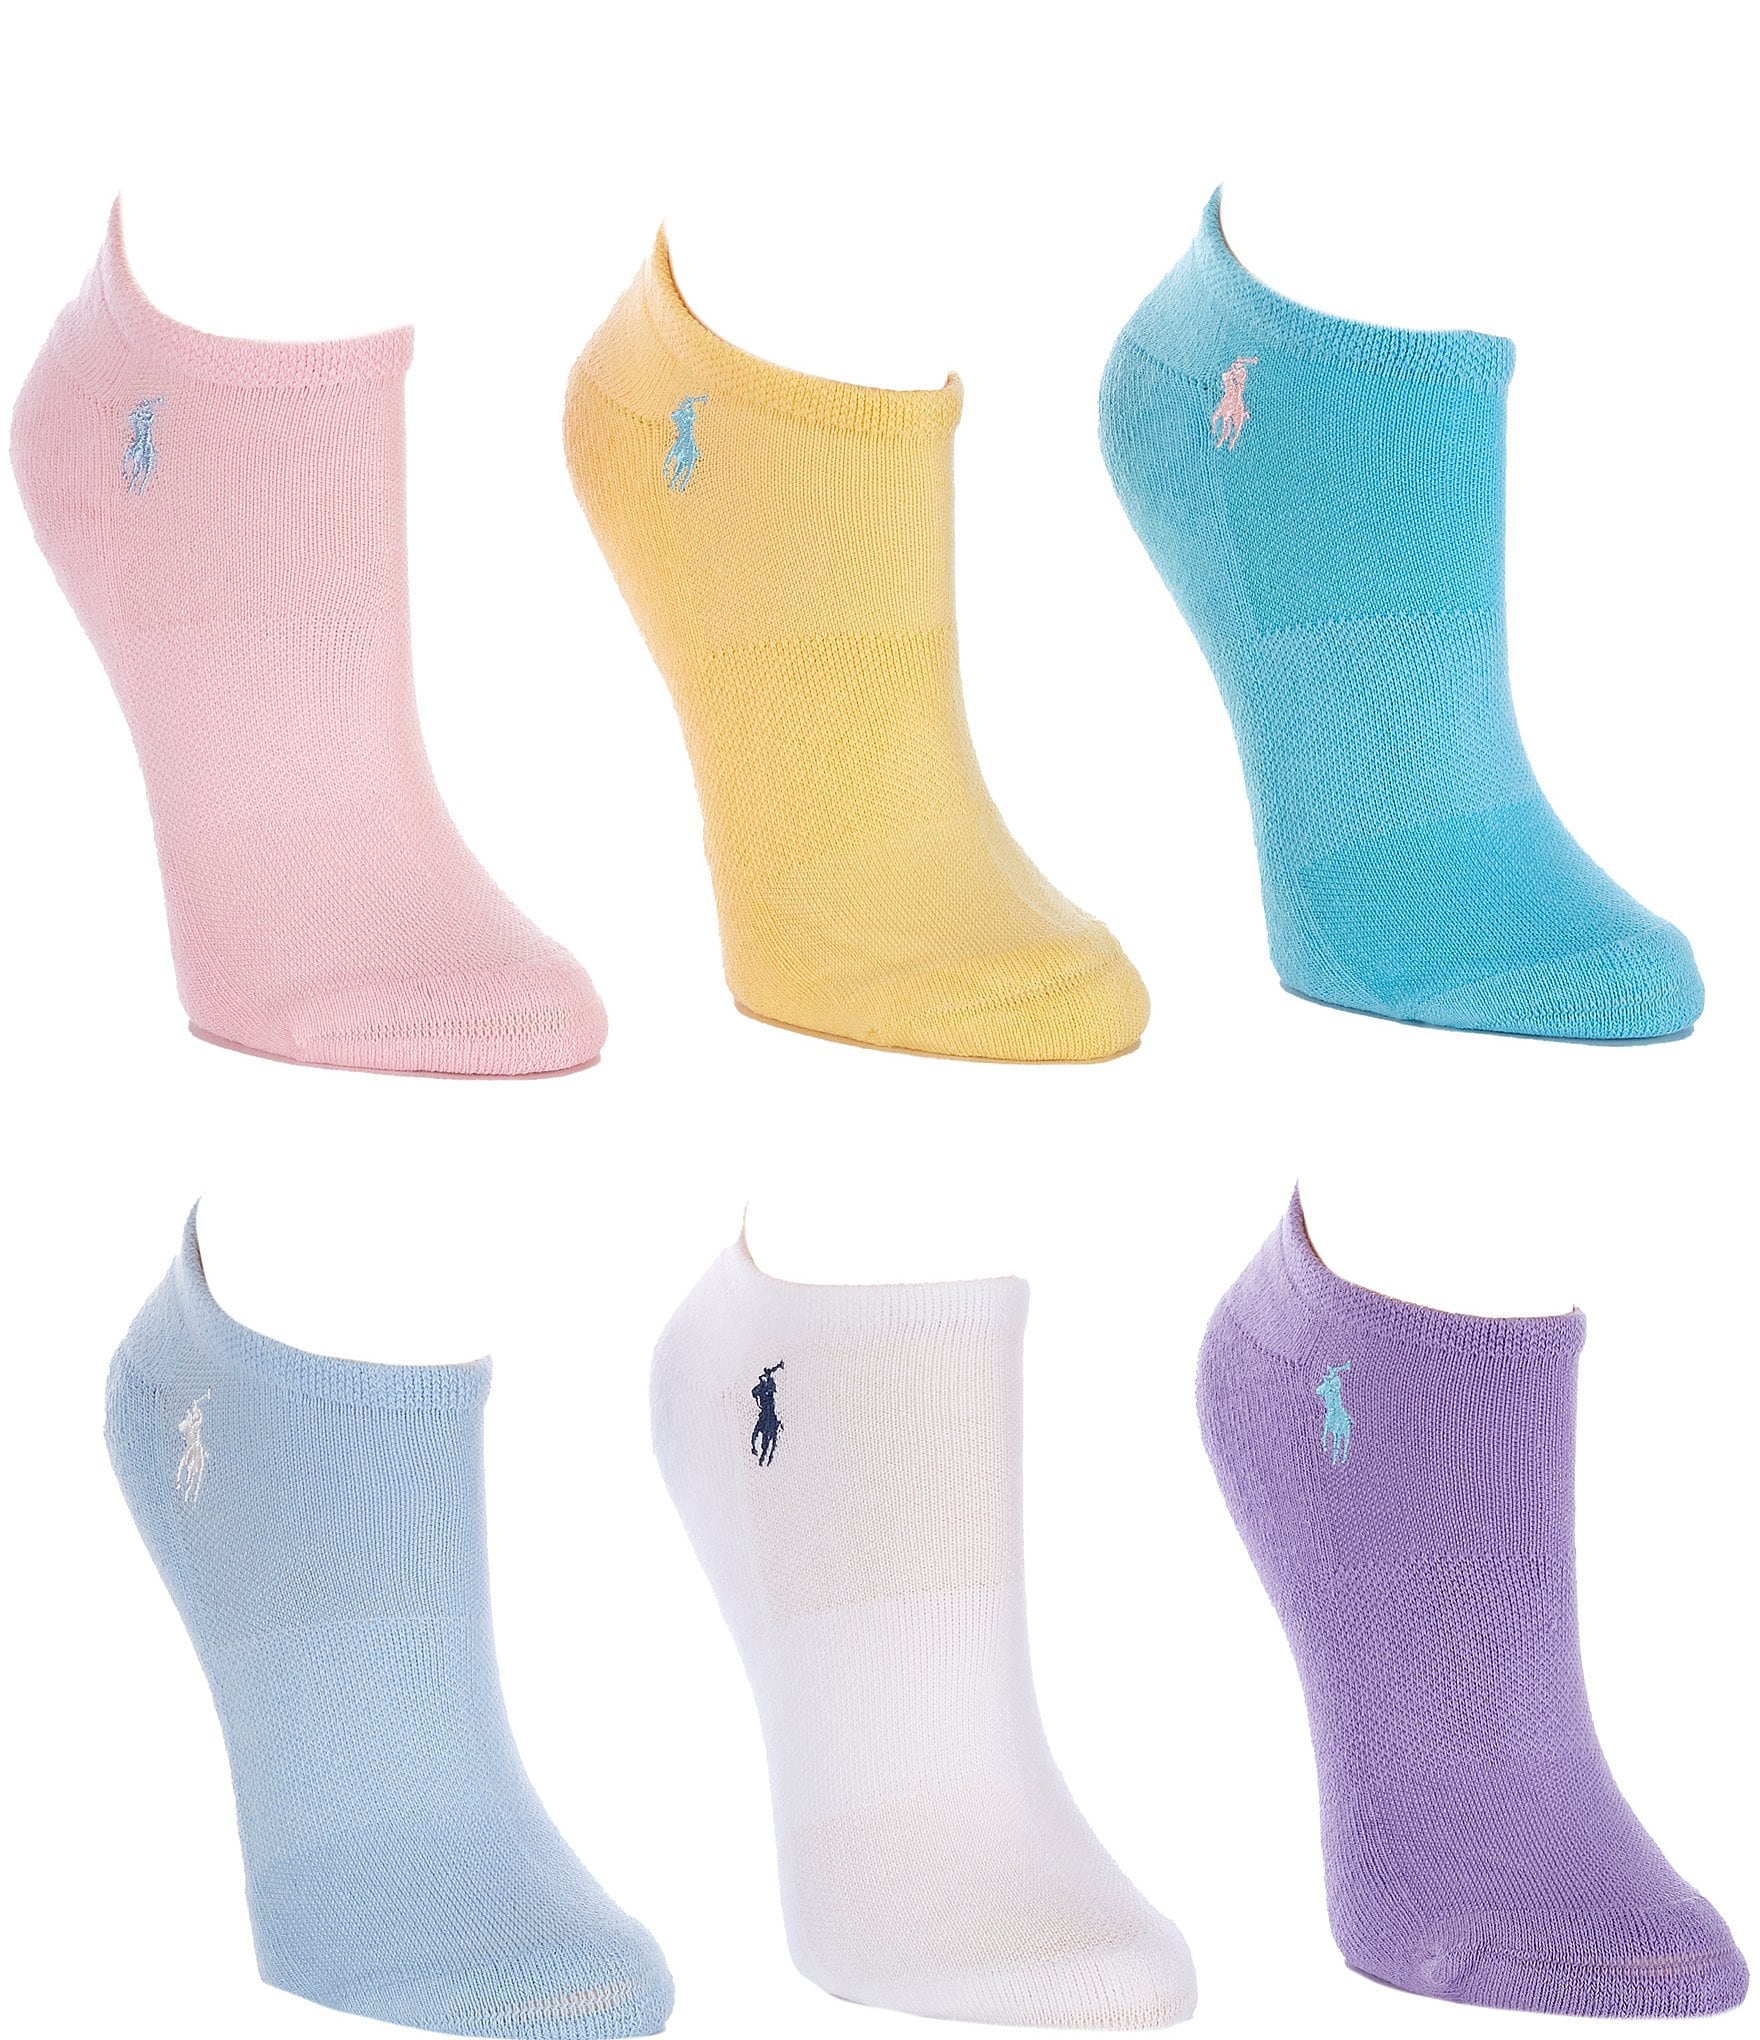 Polo Ralph Lauren Free! Athletic Socks for Women